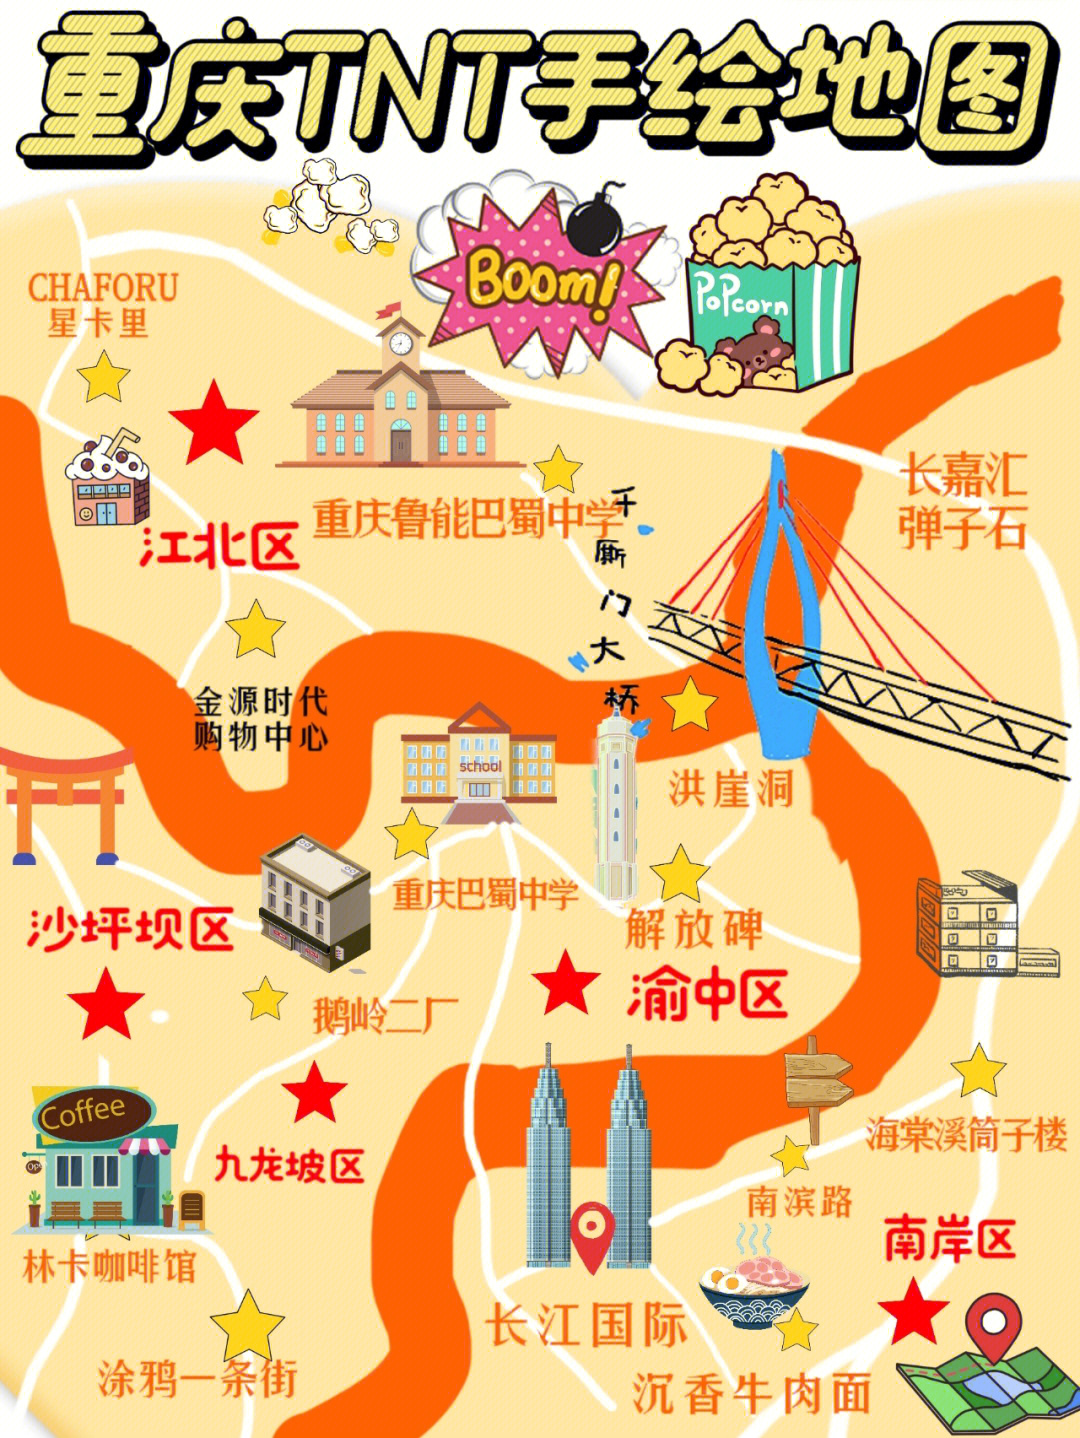 重庆十八楼地图图片